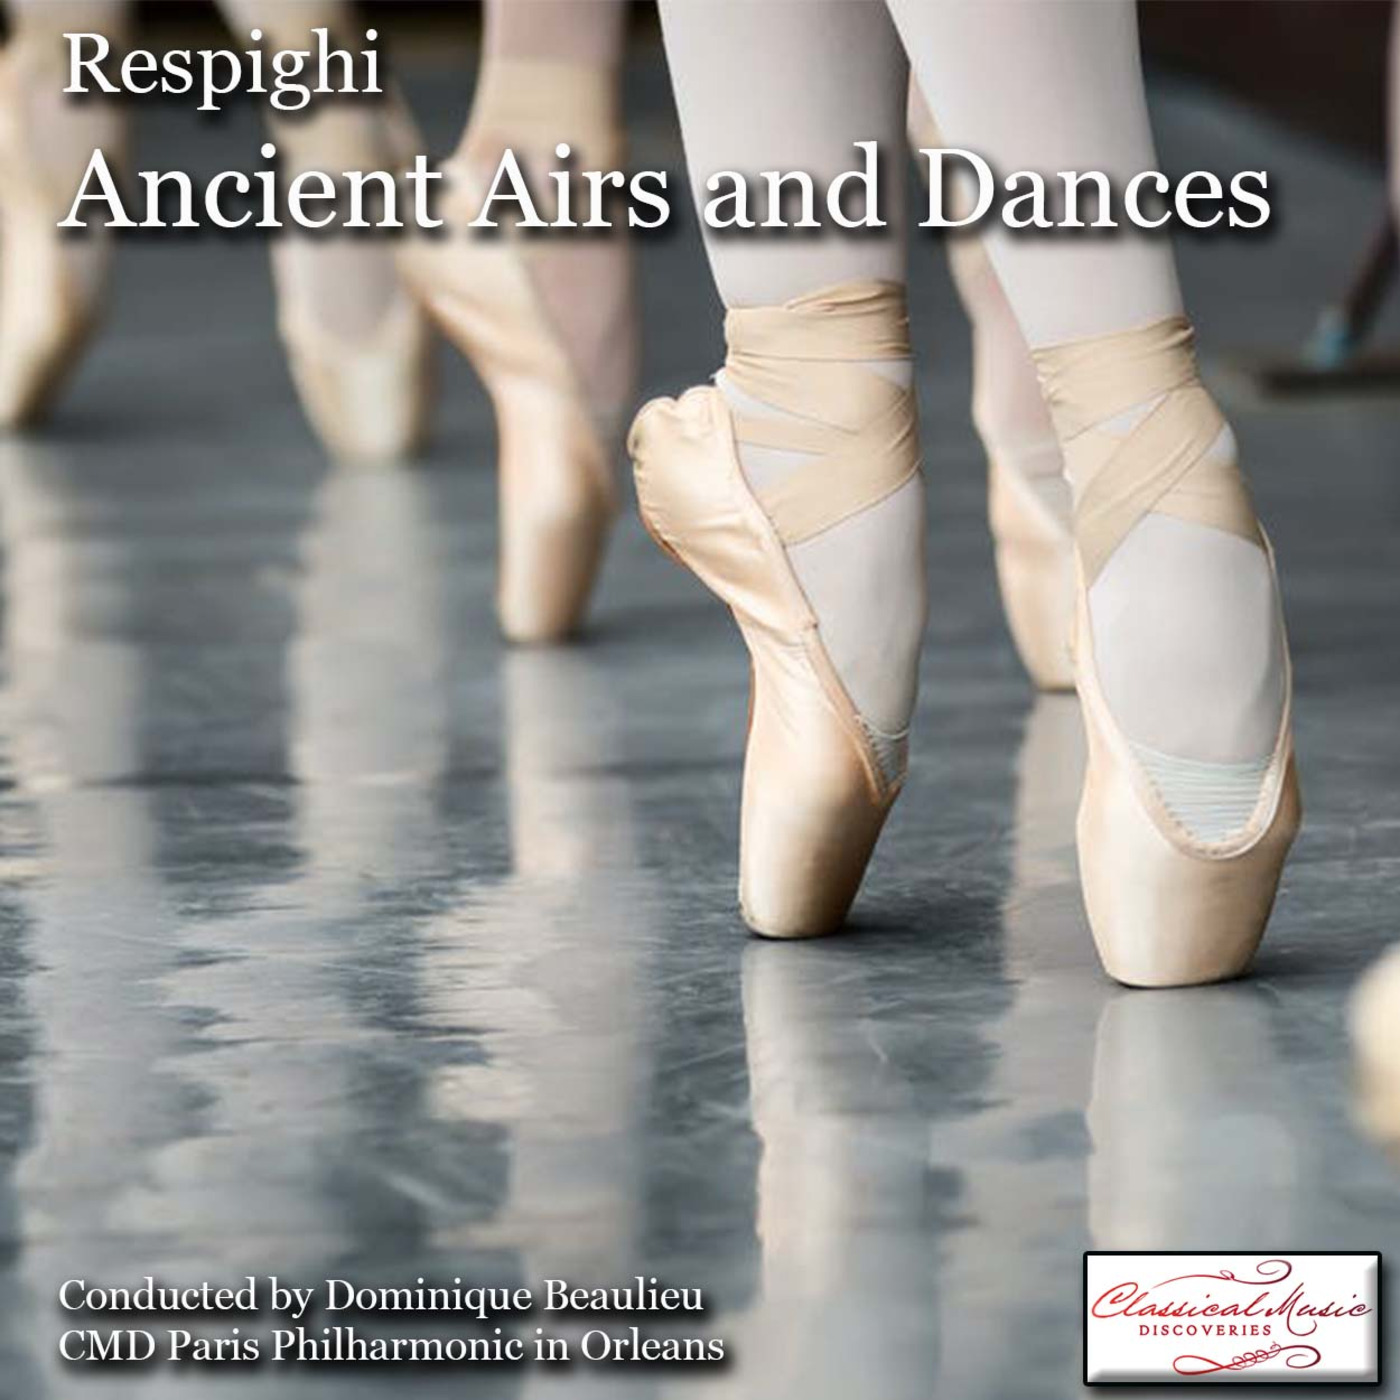 Episode 77: 17077 Respighi: Ancient Airs and Dances